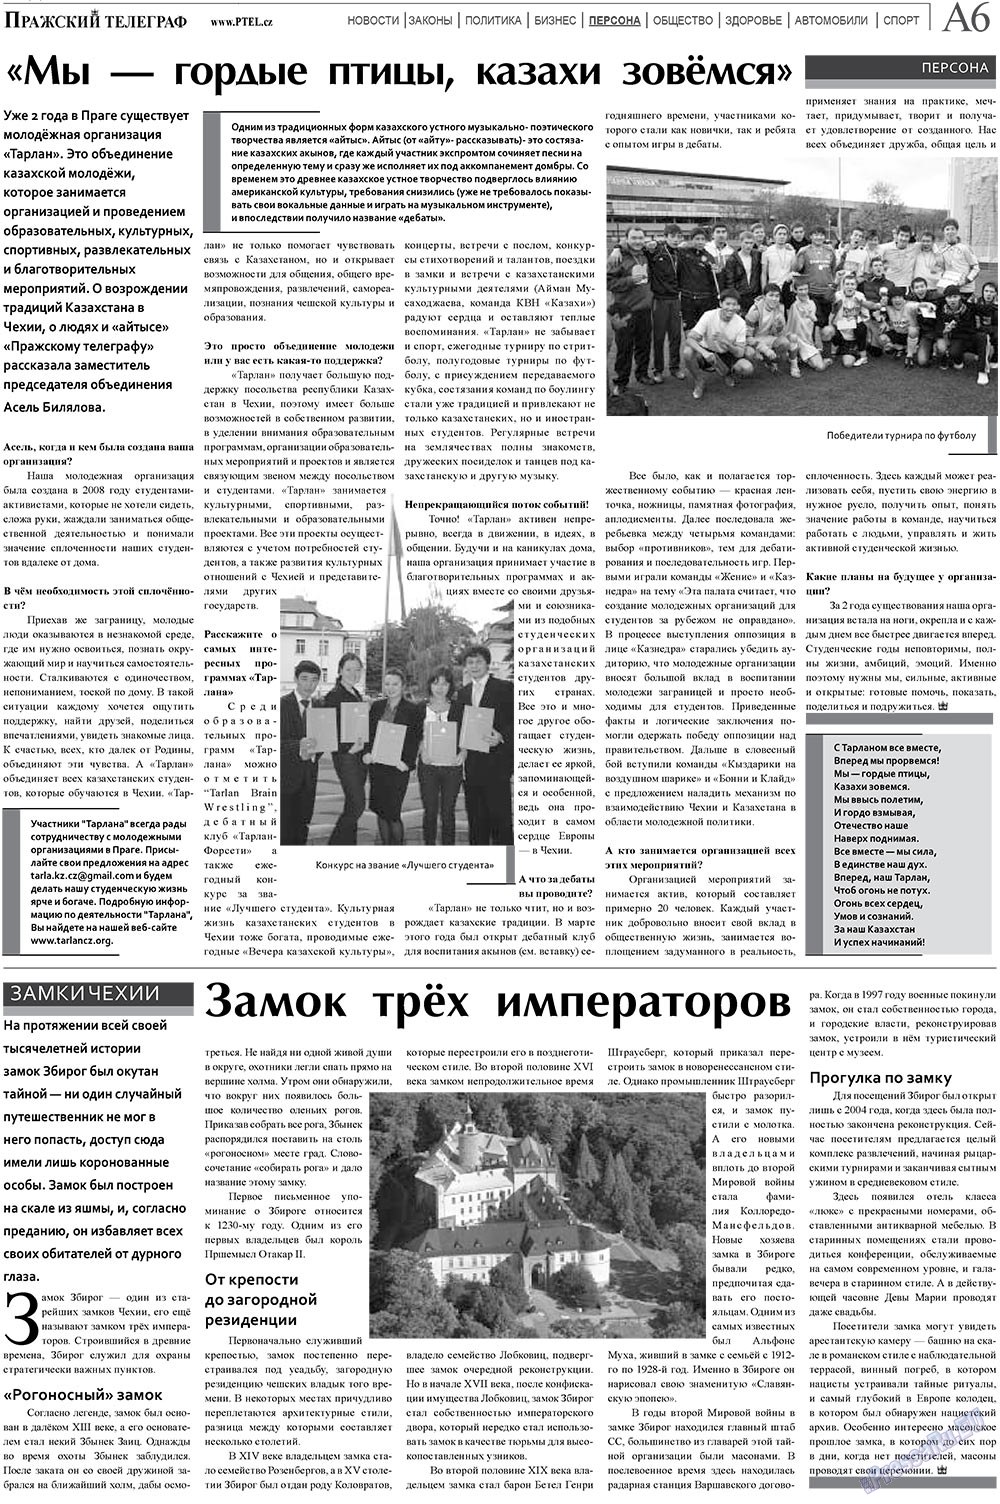 Пражский телеграф (газета). 2010 год, номер 45, стр. 6